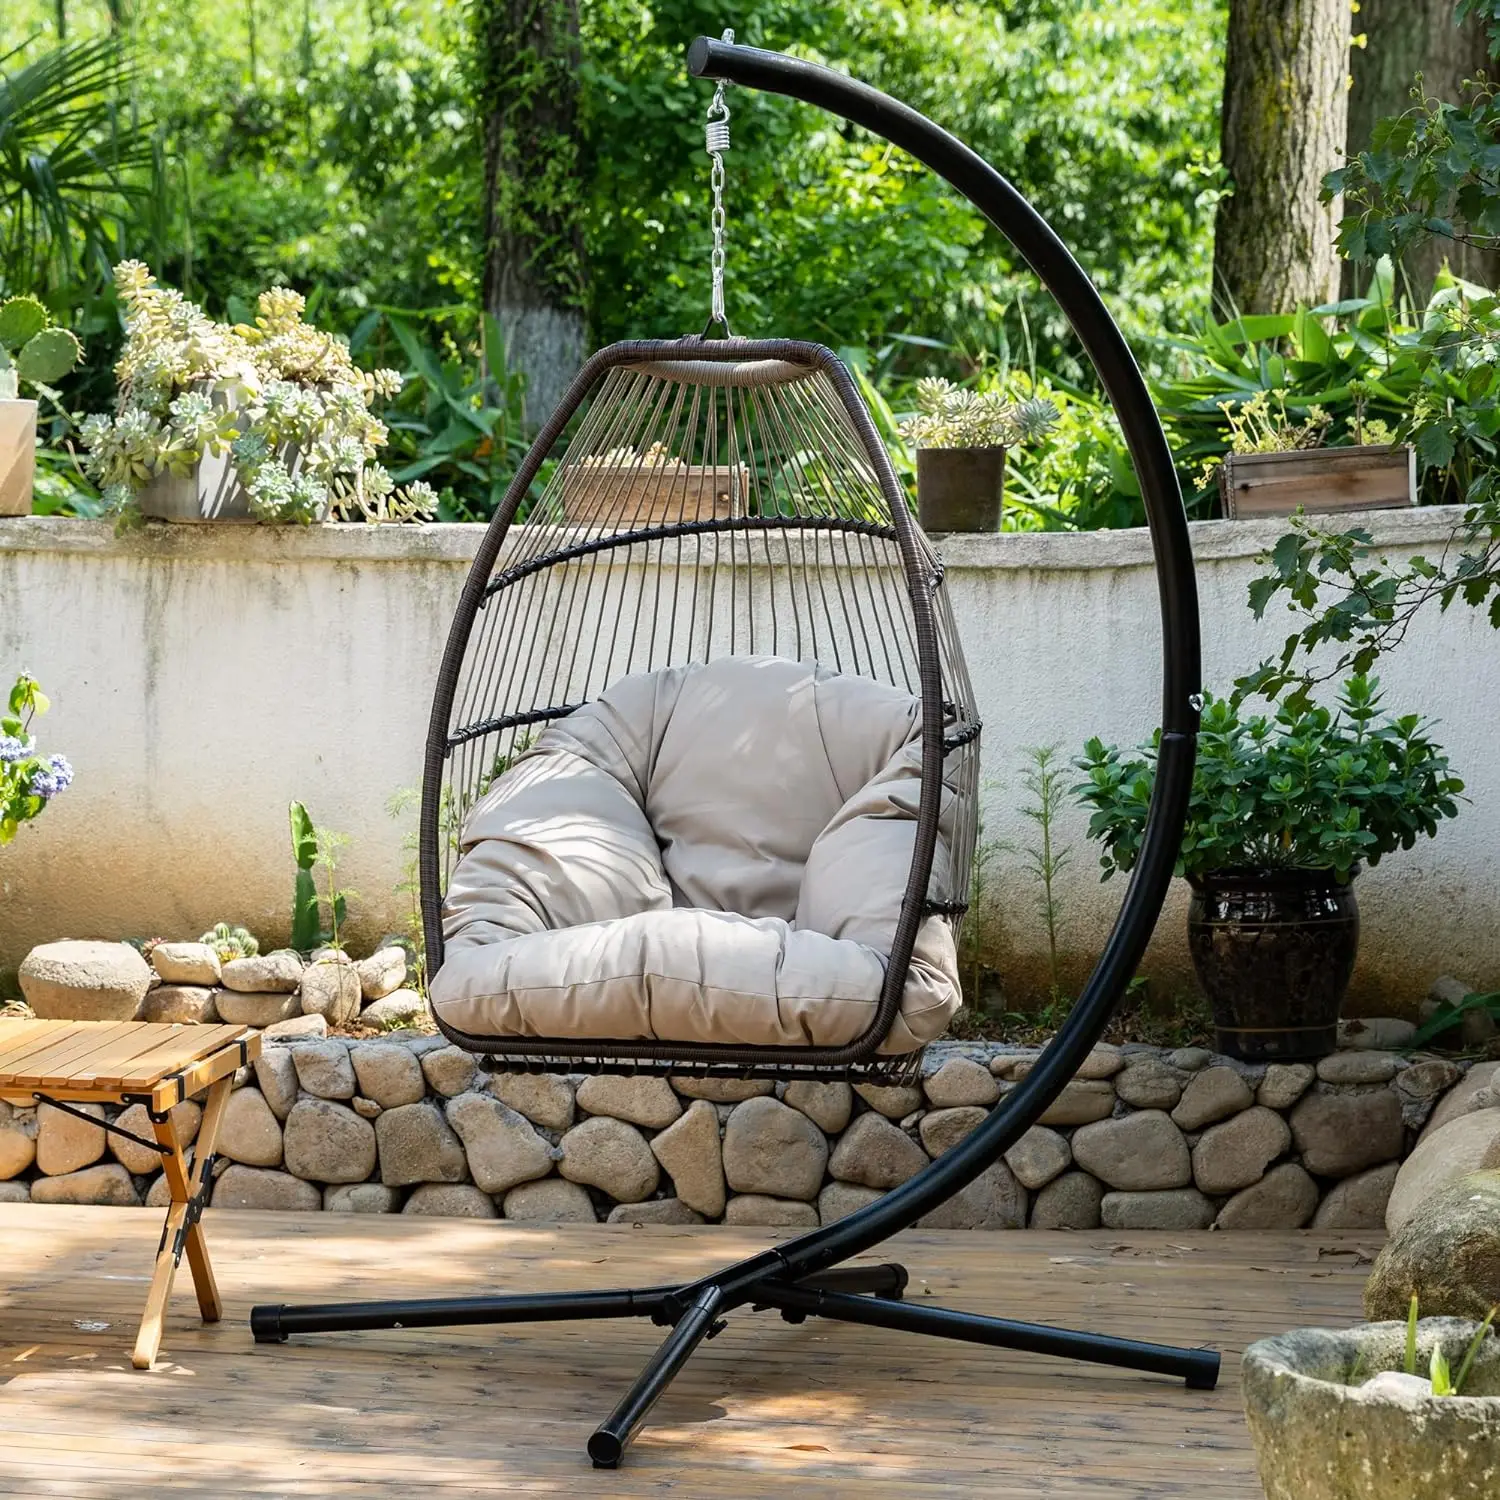 

Кресло-гамак для яиц, подвесное кресло-качели с подставкой, устойчивое к ультрафиолетовому излучению, для дома, спальни, улицы, сада